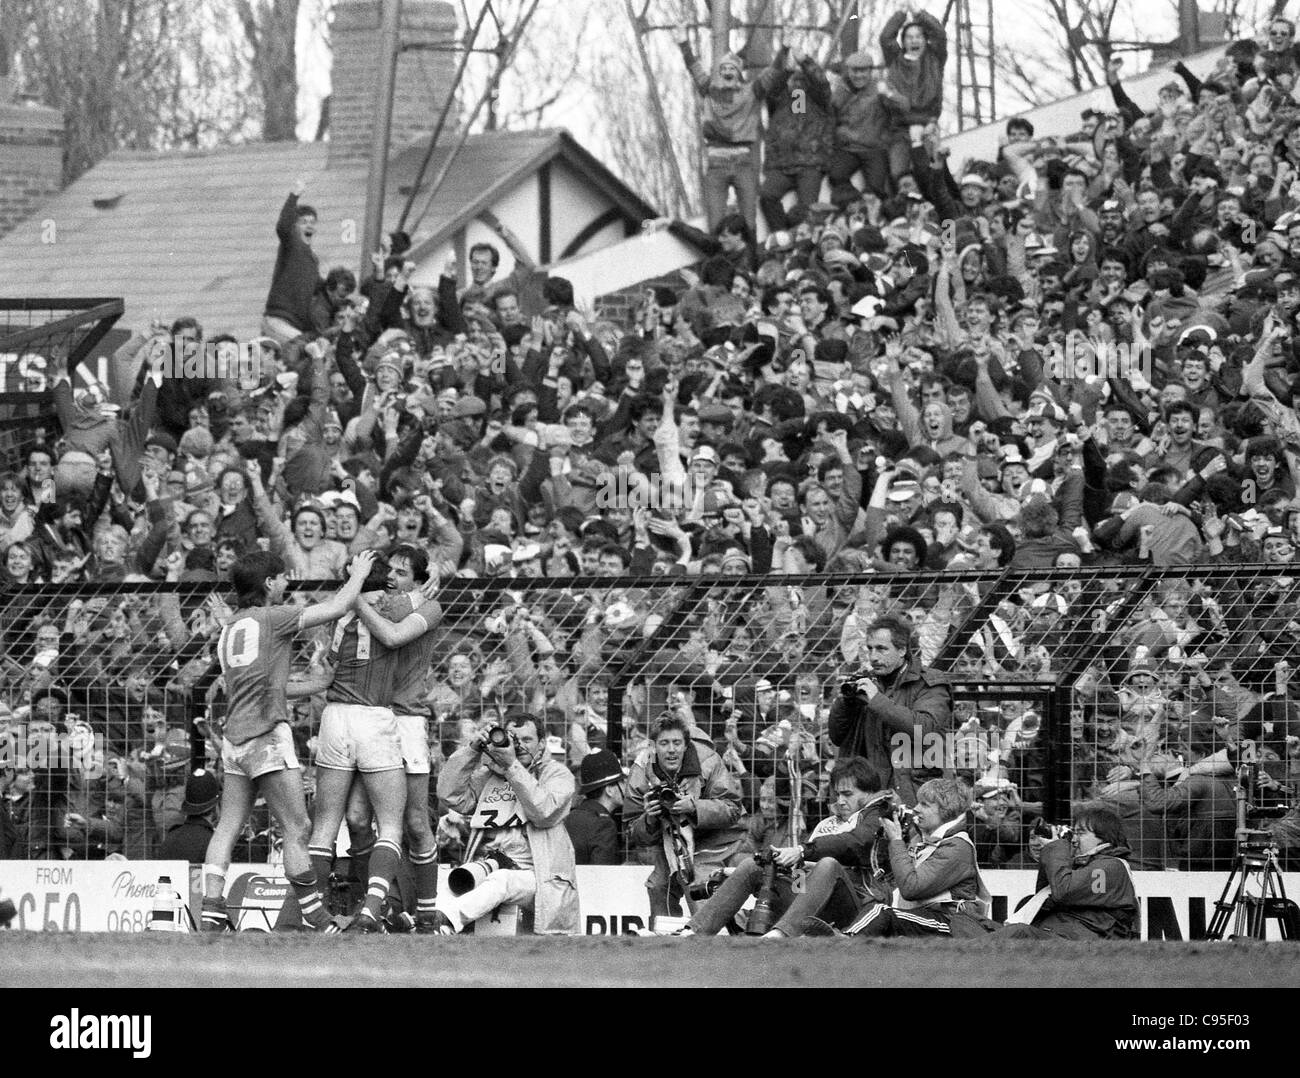 Everton V Luton Town FA Cup semi finale à Villa Park 13/4/85 joueurs Everton célèbrent leur but gagnant en face de fans Banque D'Images